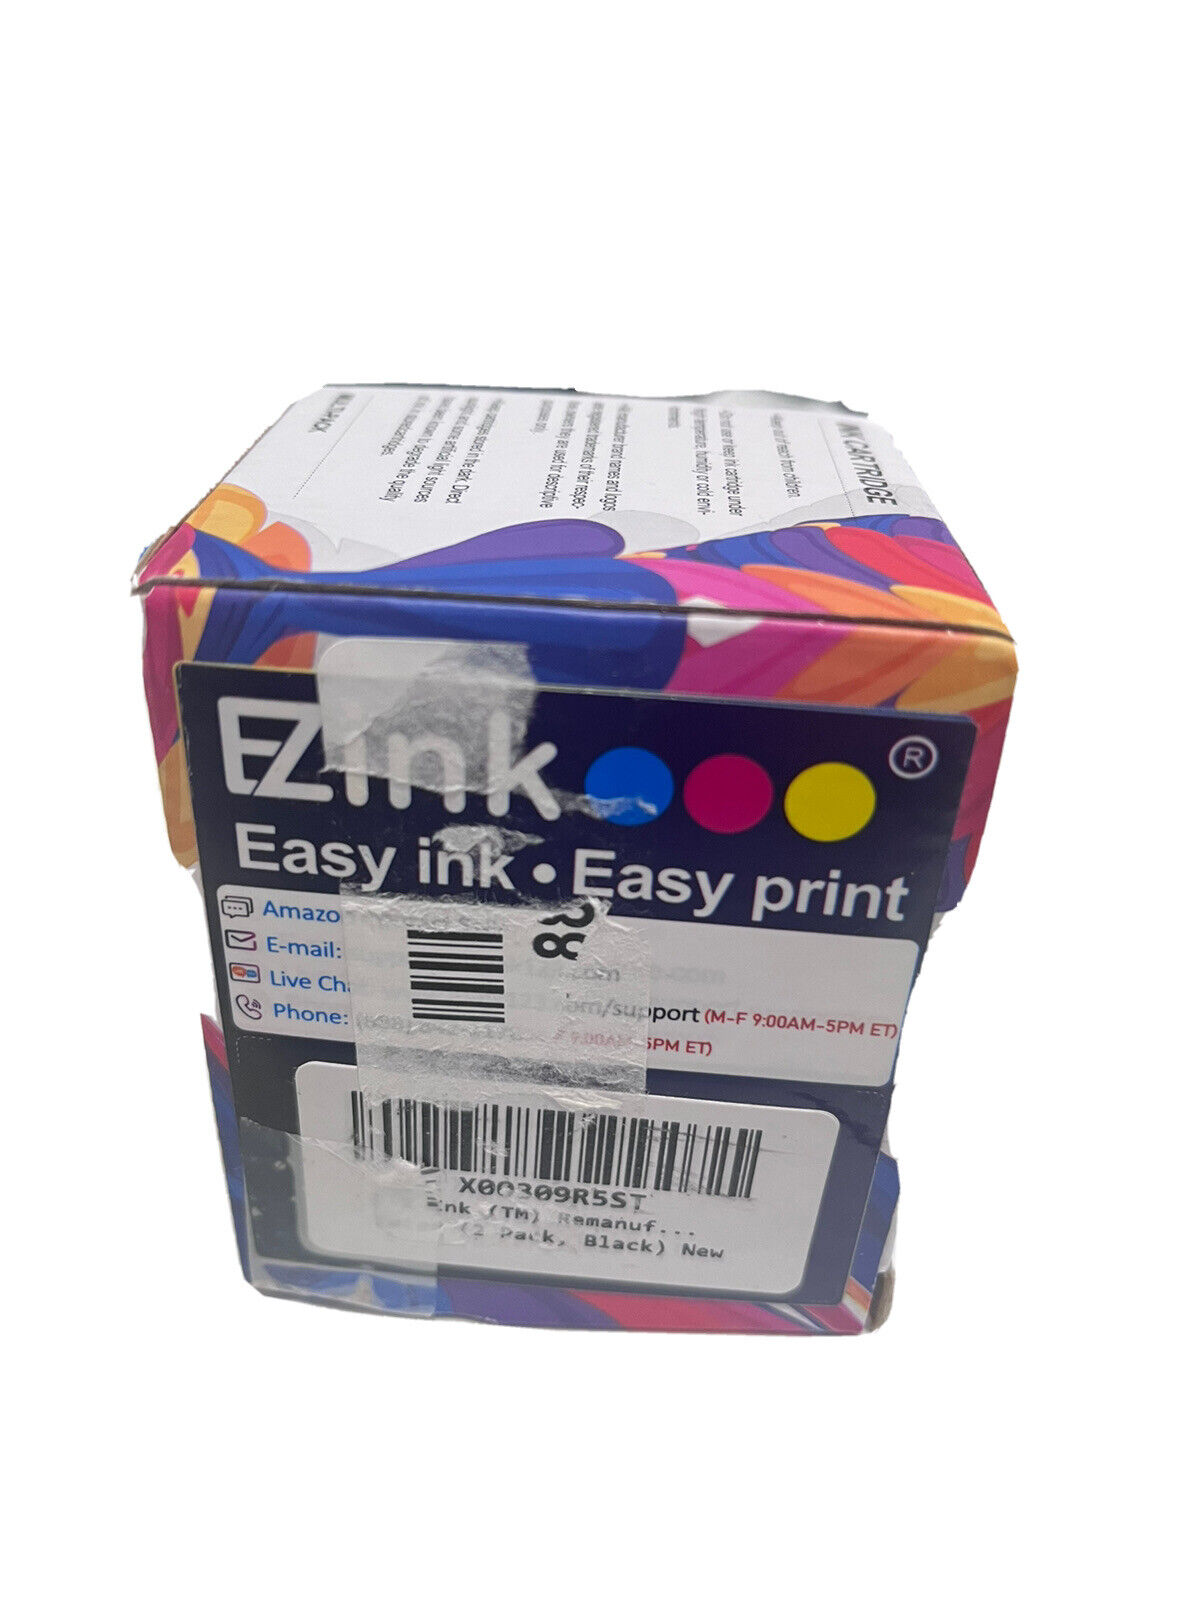 ezink easy ink. easy prink 702LX